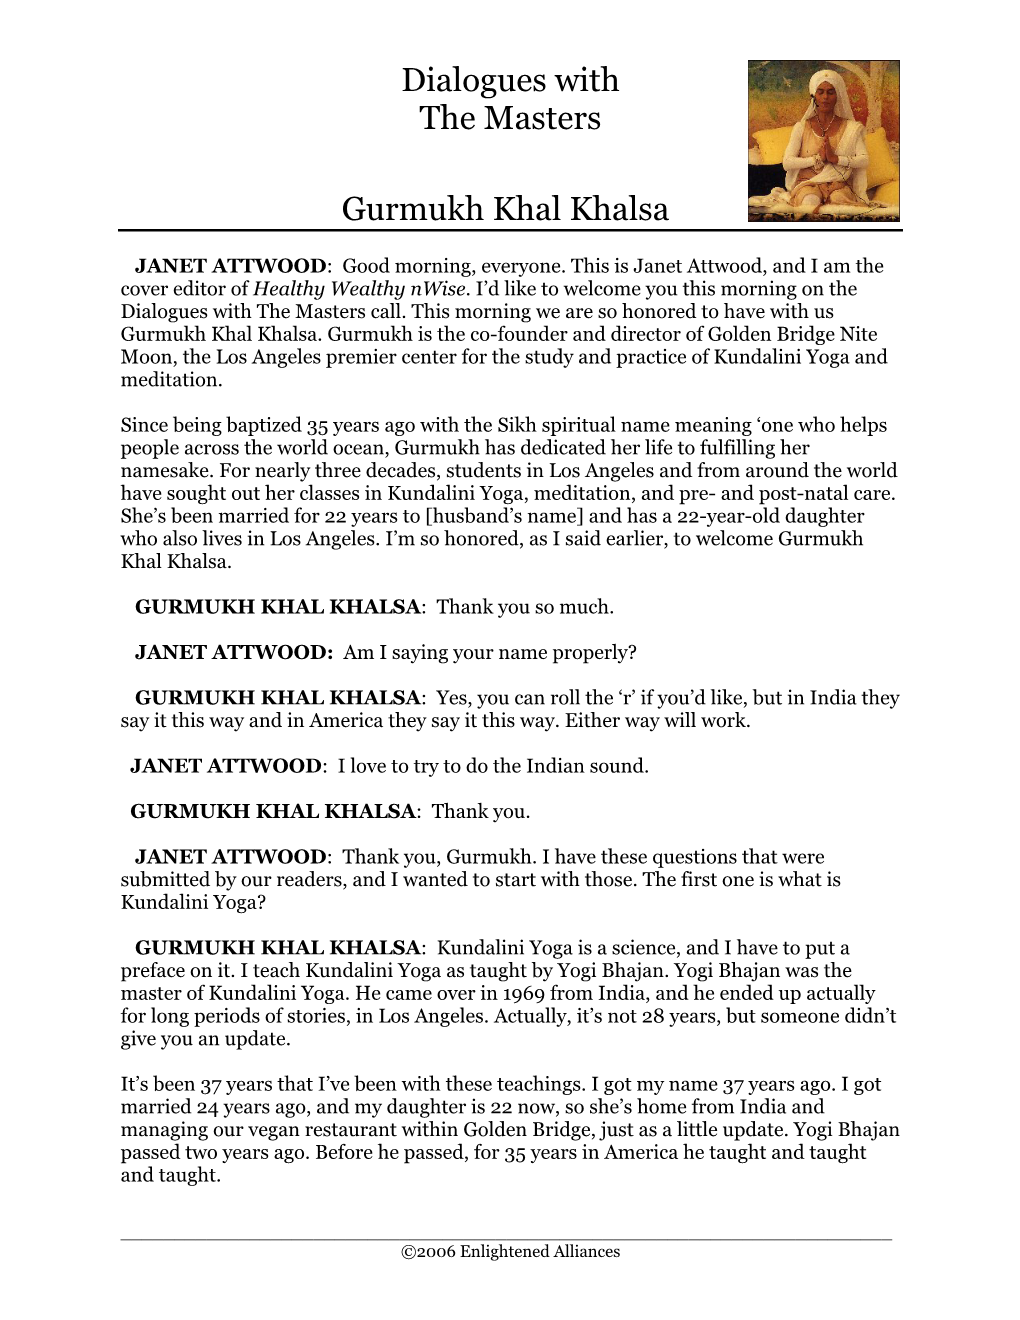 Dialogues with the Masters Gurmukh Khal Khalsa